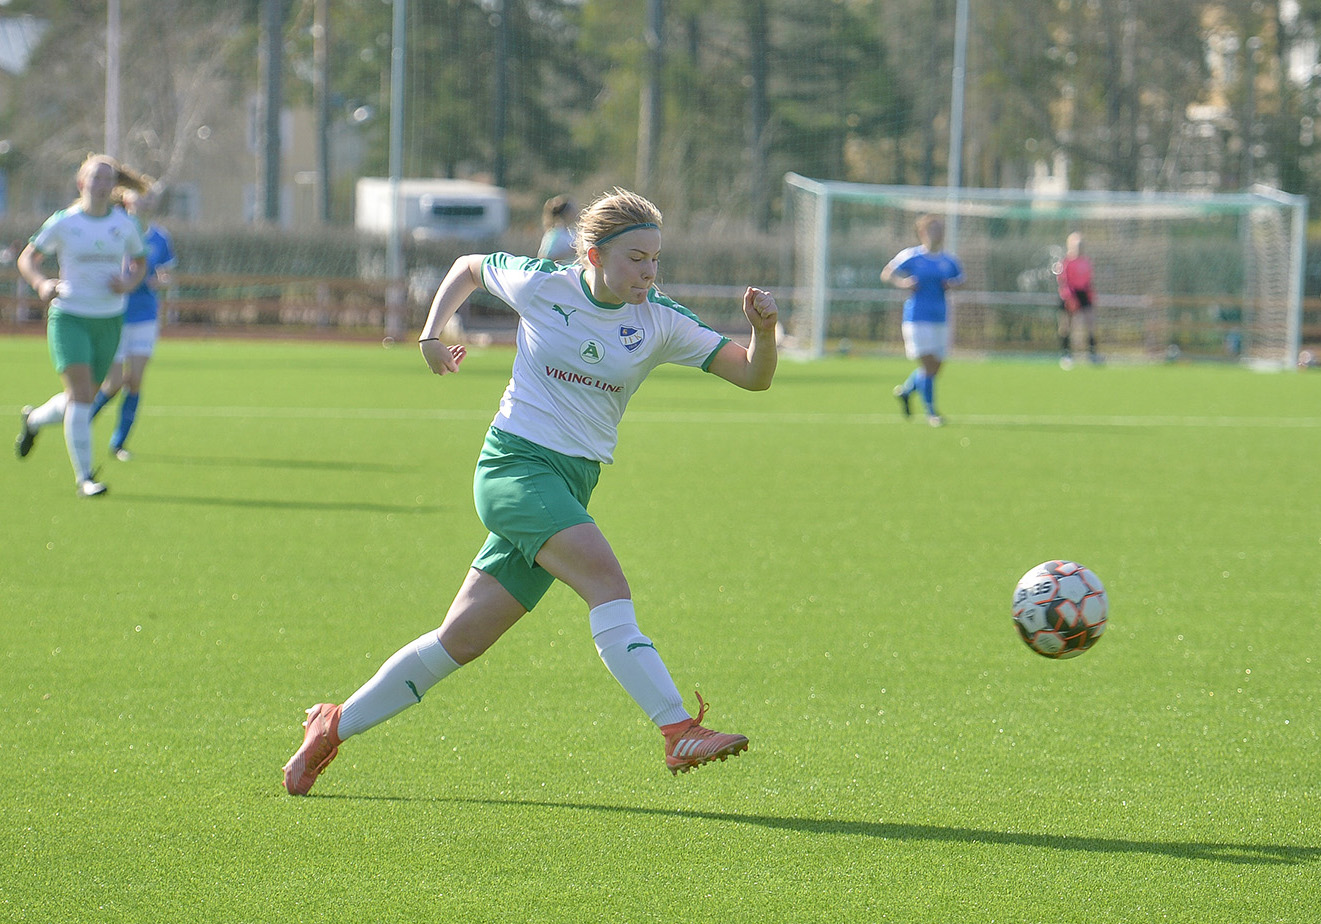 PaiHa vann mot IFK Mariehamn